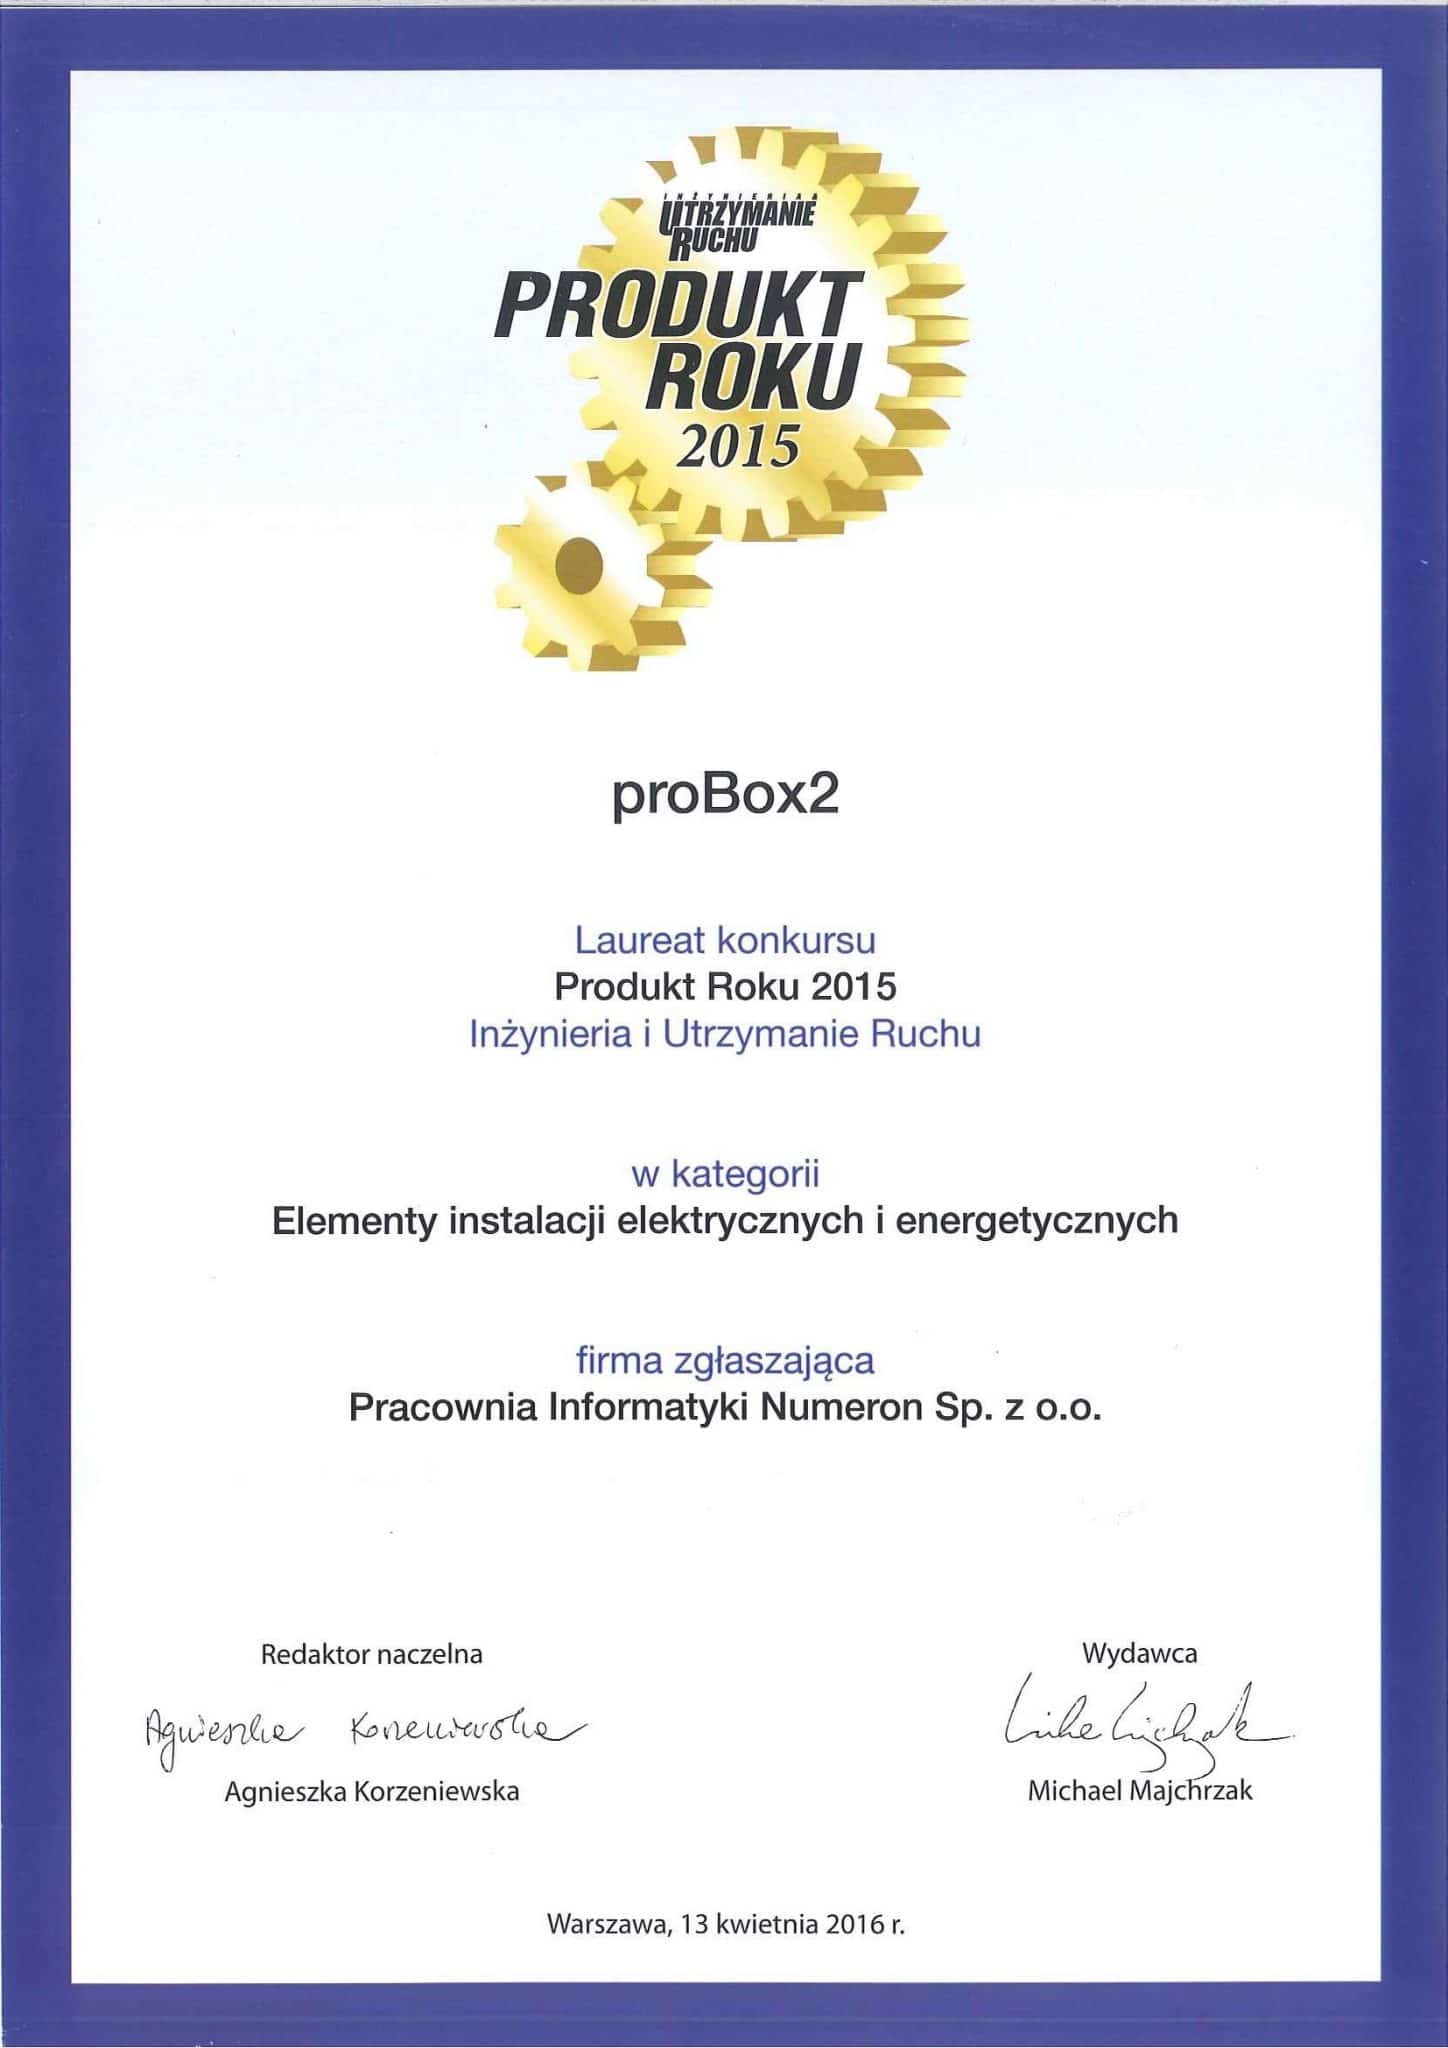 Urządzenie proBox2 uzyskało tytuł Produkt Roku 2015